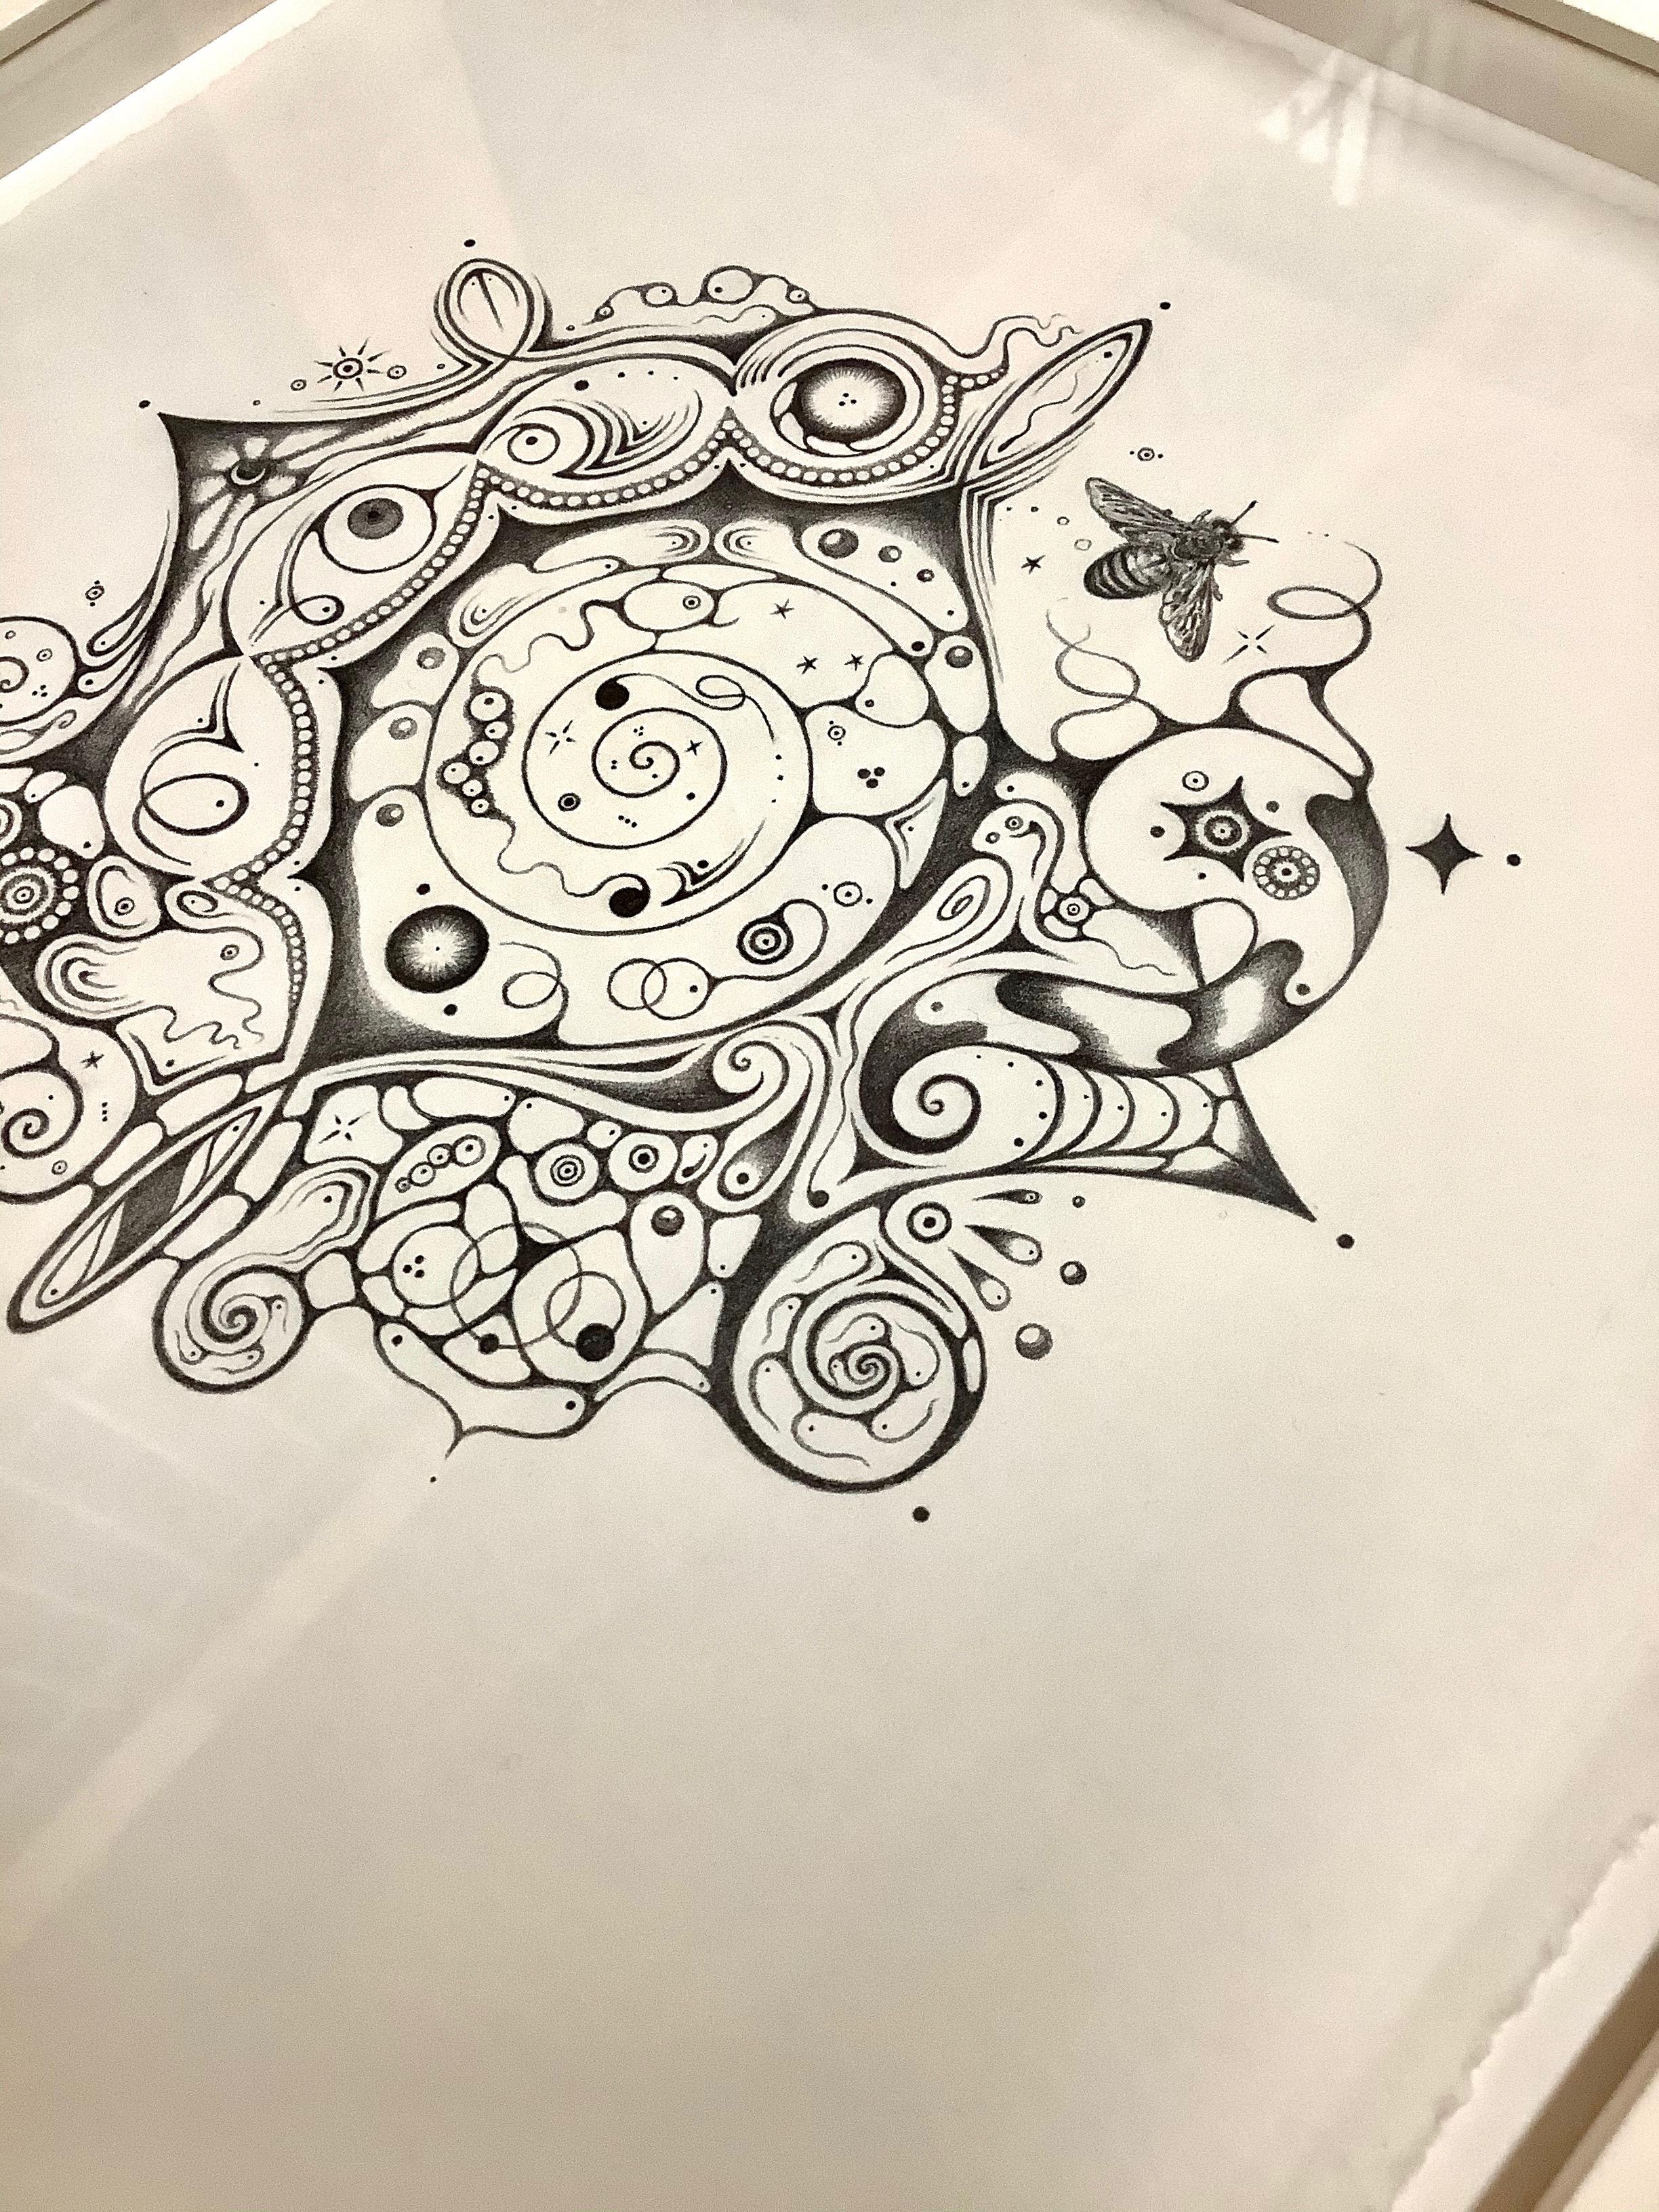 Snowflakes 140 Cosmopolitan, Mandala Pencil Drawing, Crescent Moon, Bumble Bee - Contemporary Art by Michiyo Ihara